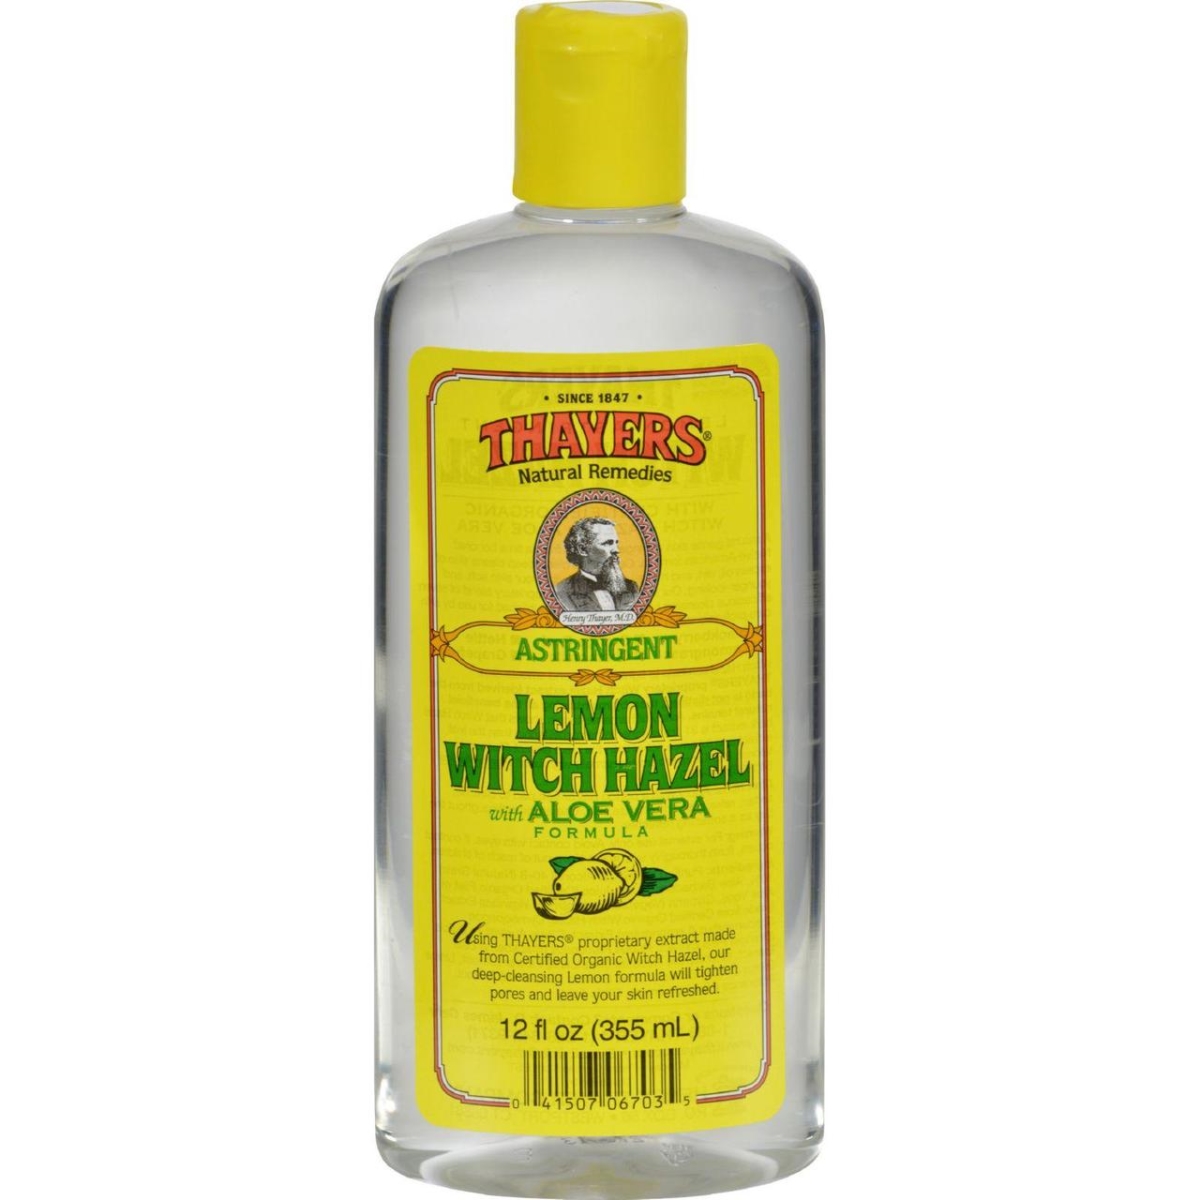 Hg0451781 12 Fl Oz Witch Hazel With Aloe Vera Lemon